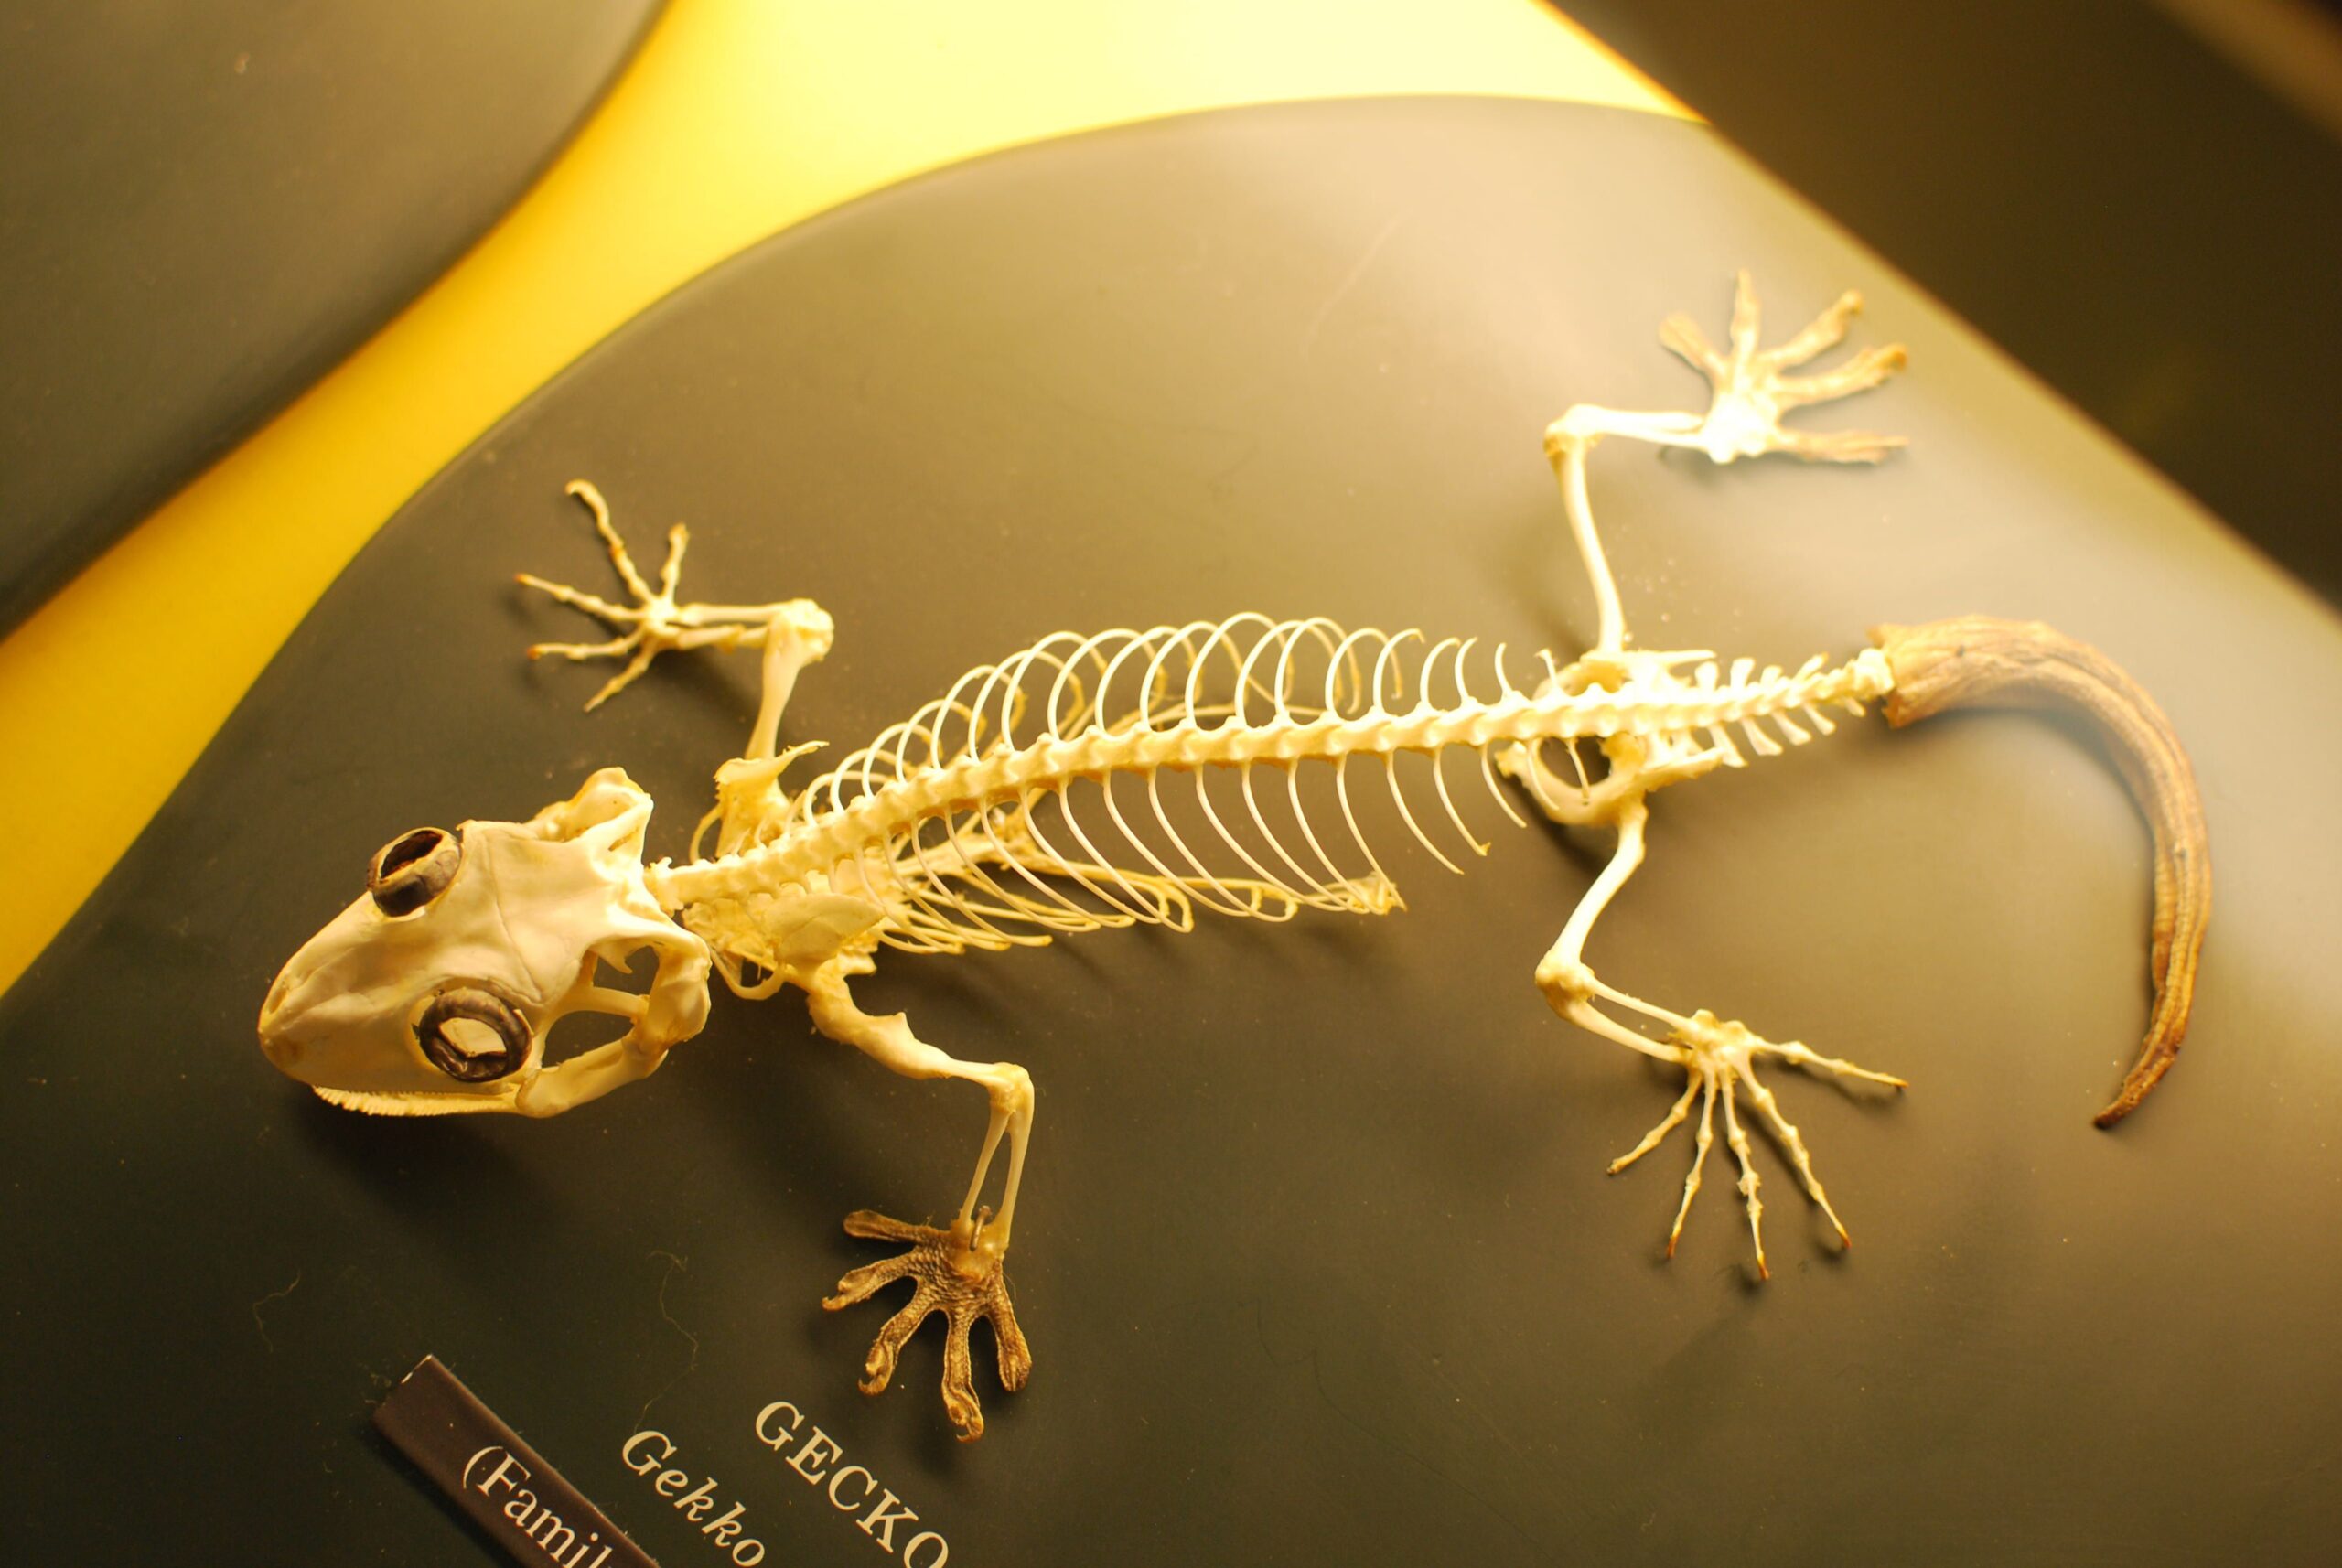 Do Geckos Have Bones